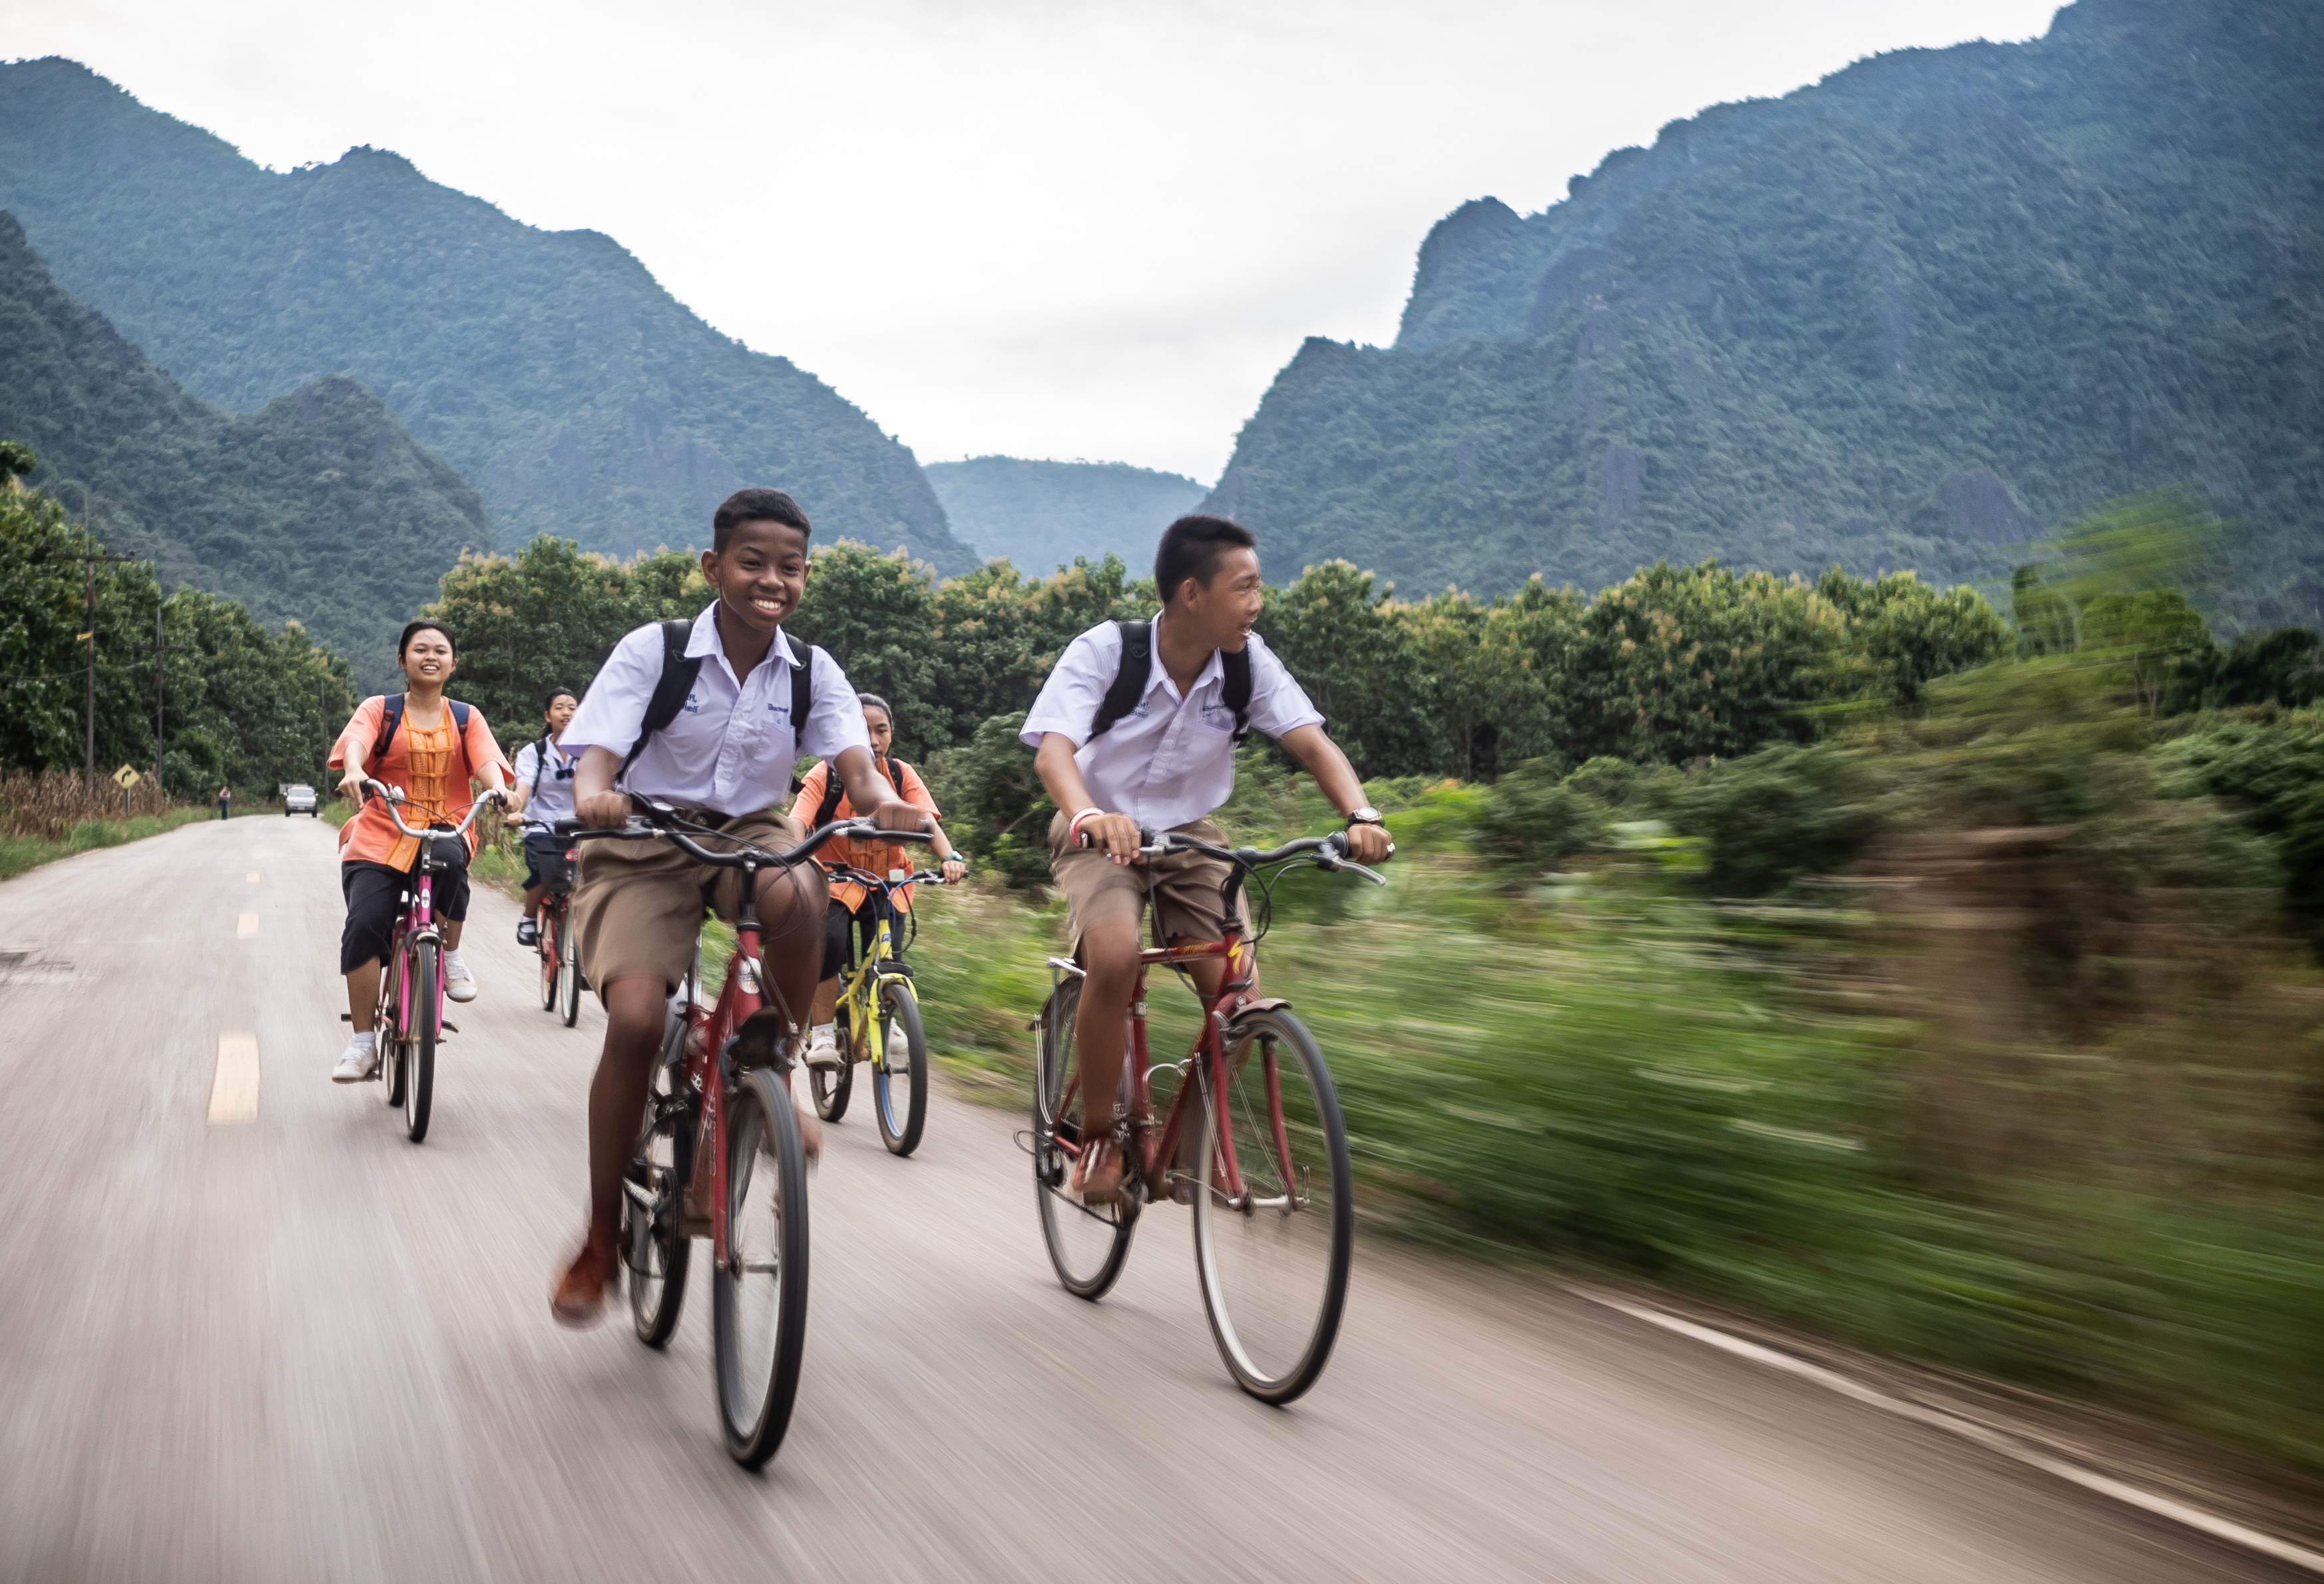 Eine Gruppe jugendlicher Radfahrerinnen und Radfahrer fährt zügig eine Straße entlang, im Hintergrund Dschungel und hohe Berge  (Quelle: Jakob Studnar)